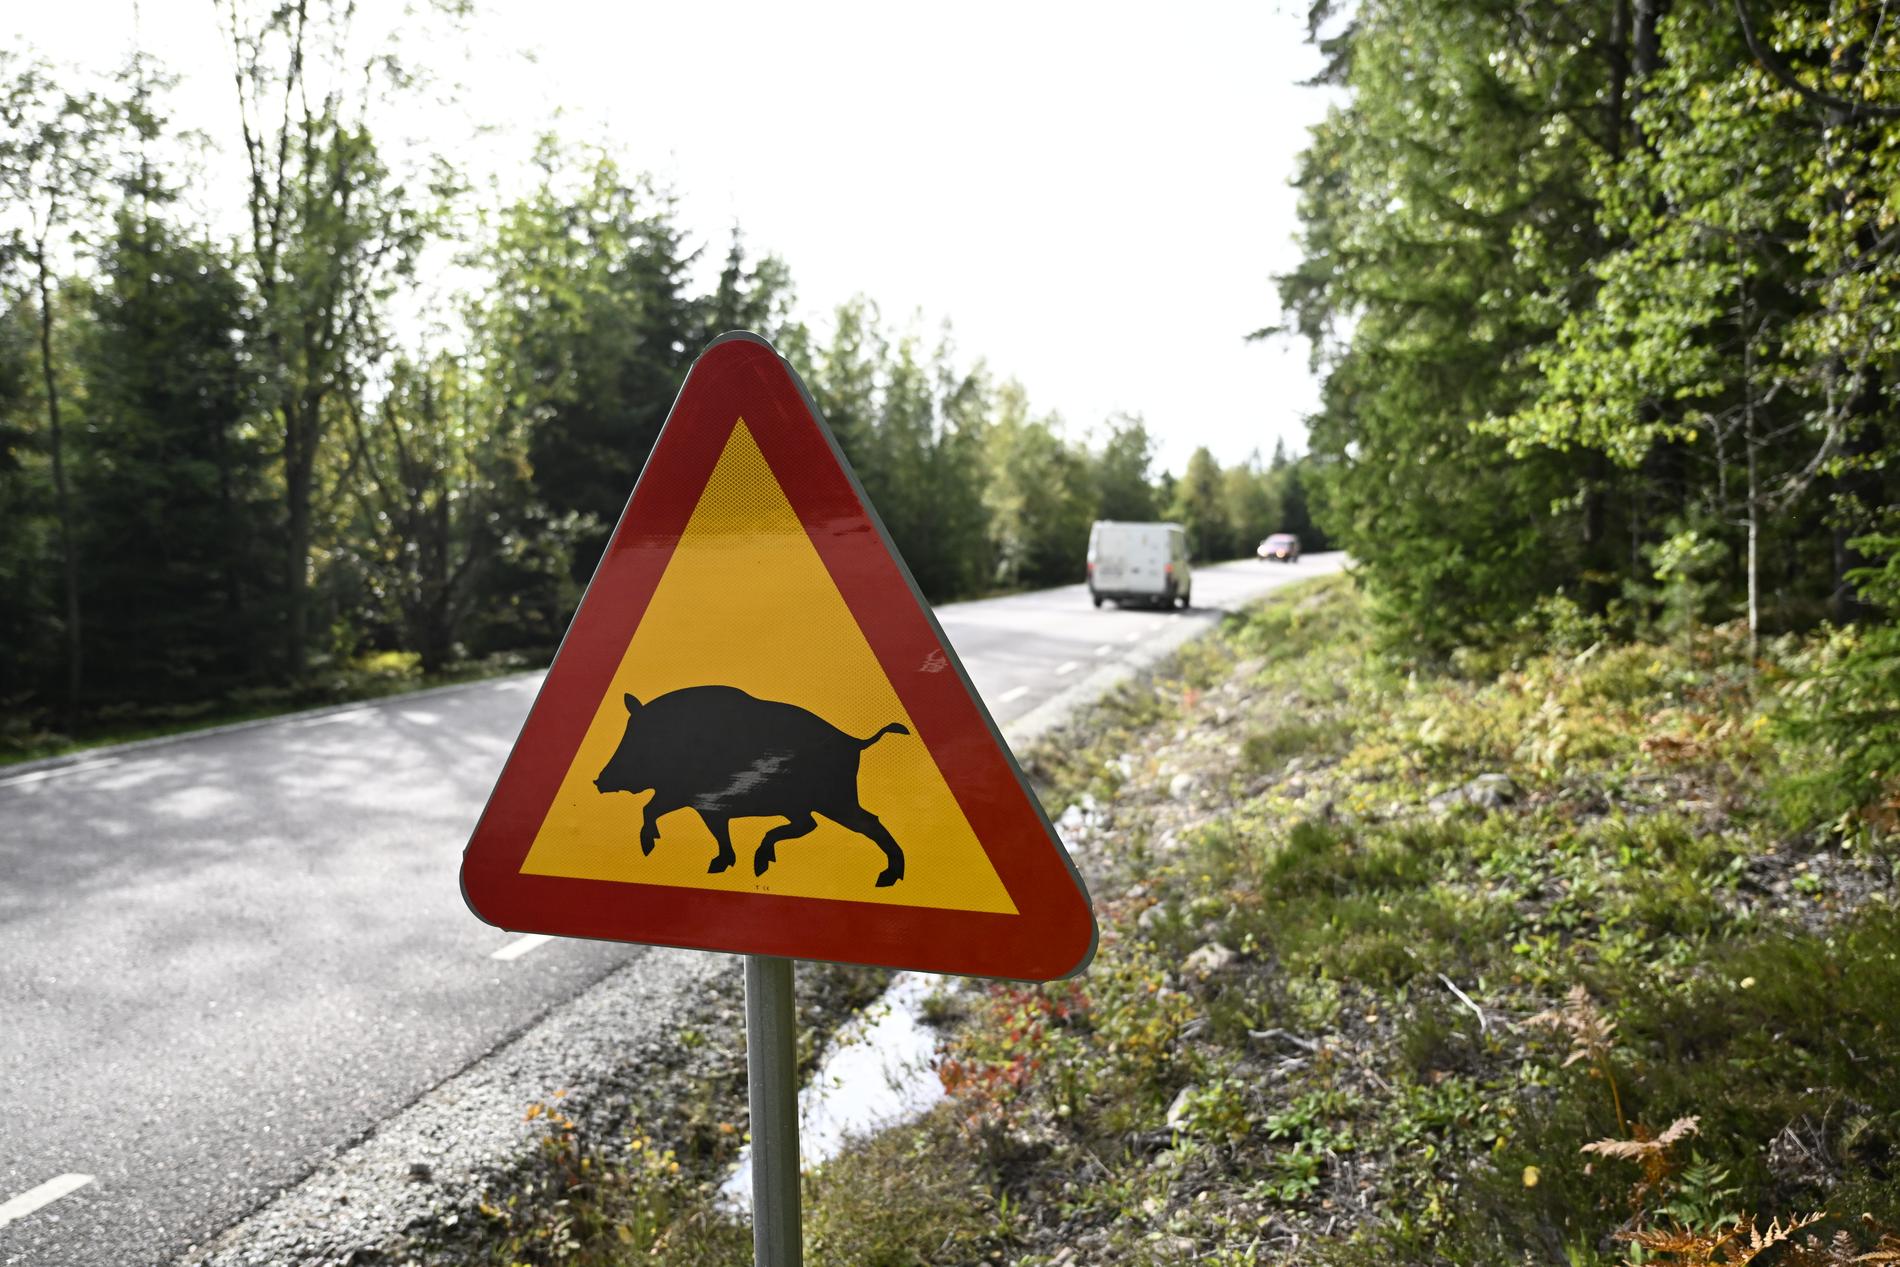 Fagersta och Norberg är två av kommunerna som drabbats hårt sedan det konstaterats att den afrikanska svinpesten har kommit till Sverige.